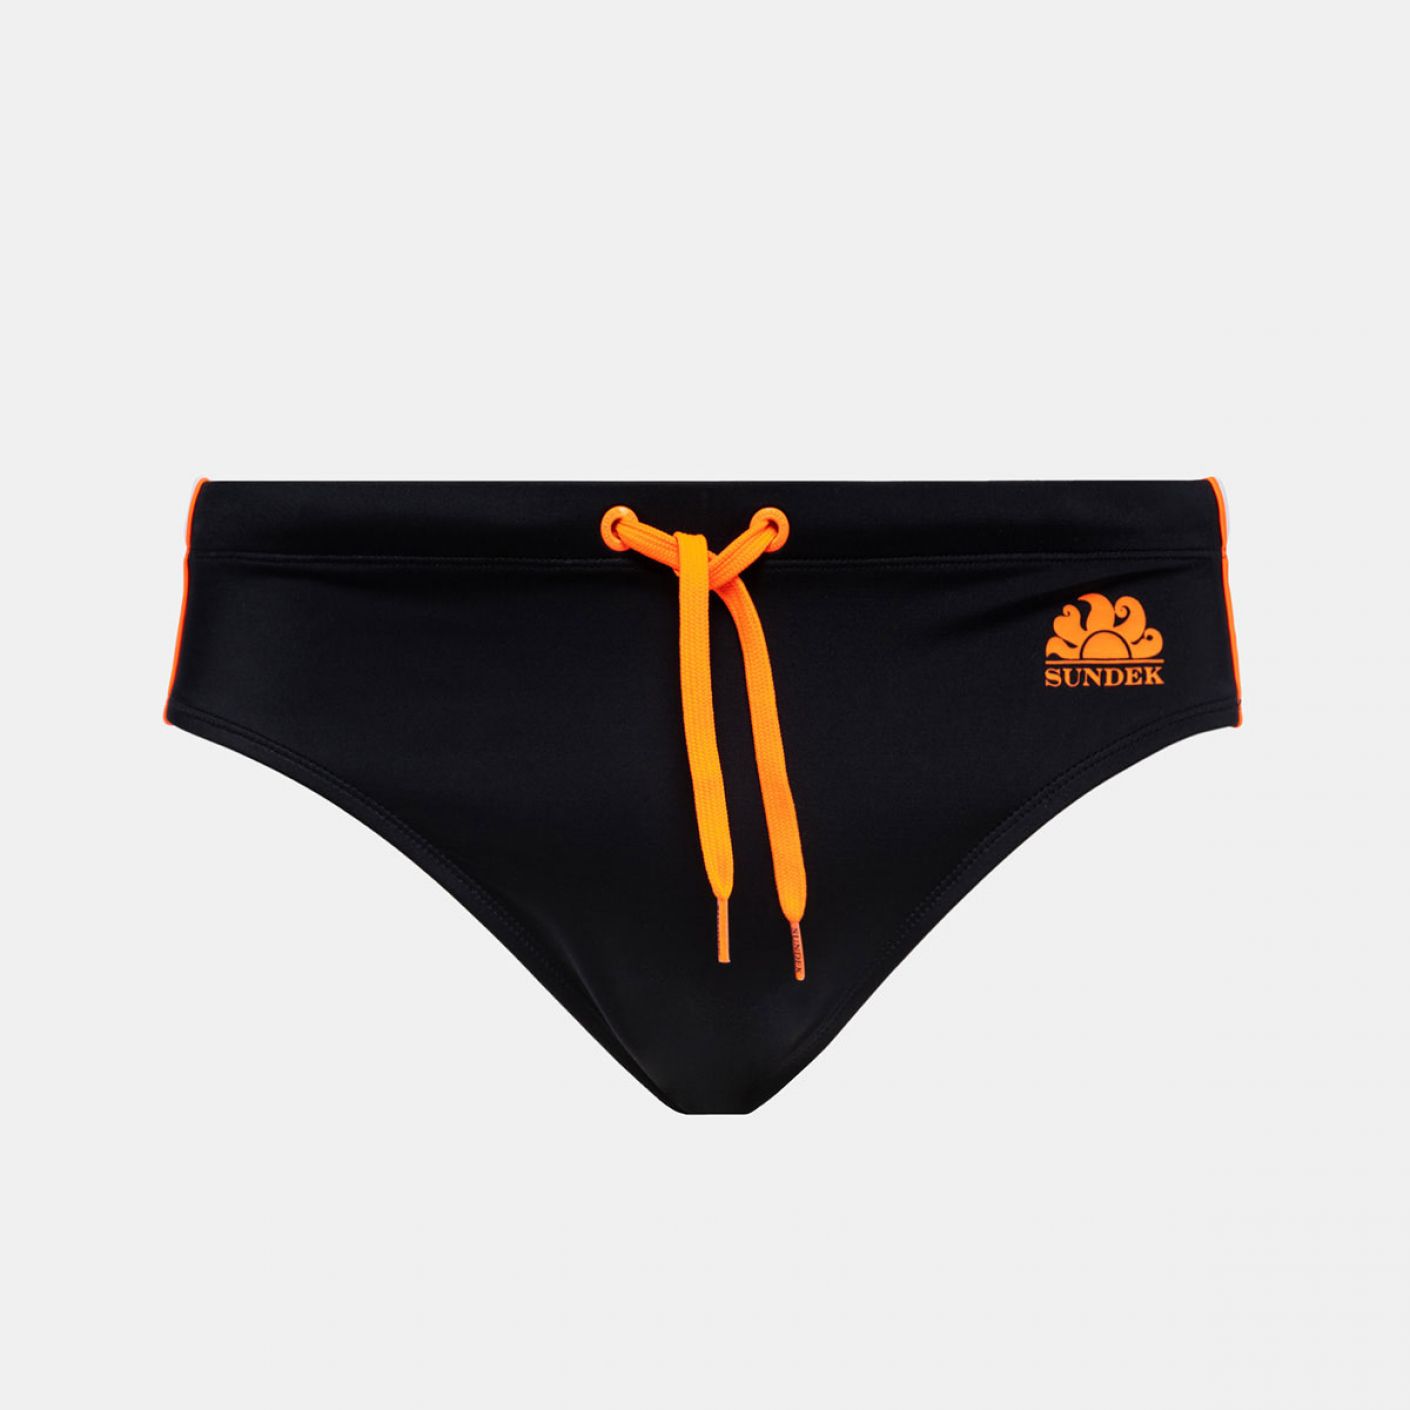 Sundek Diwalter Costume Black Orange Swim Briefs